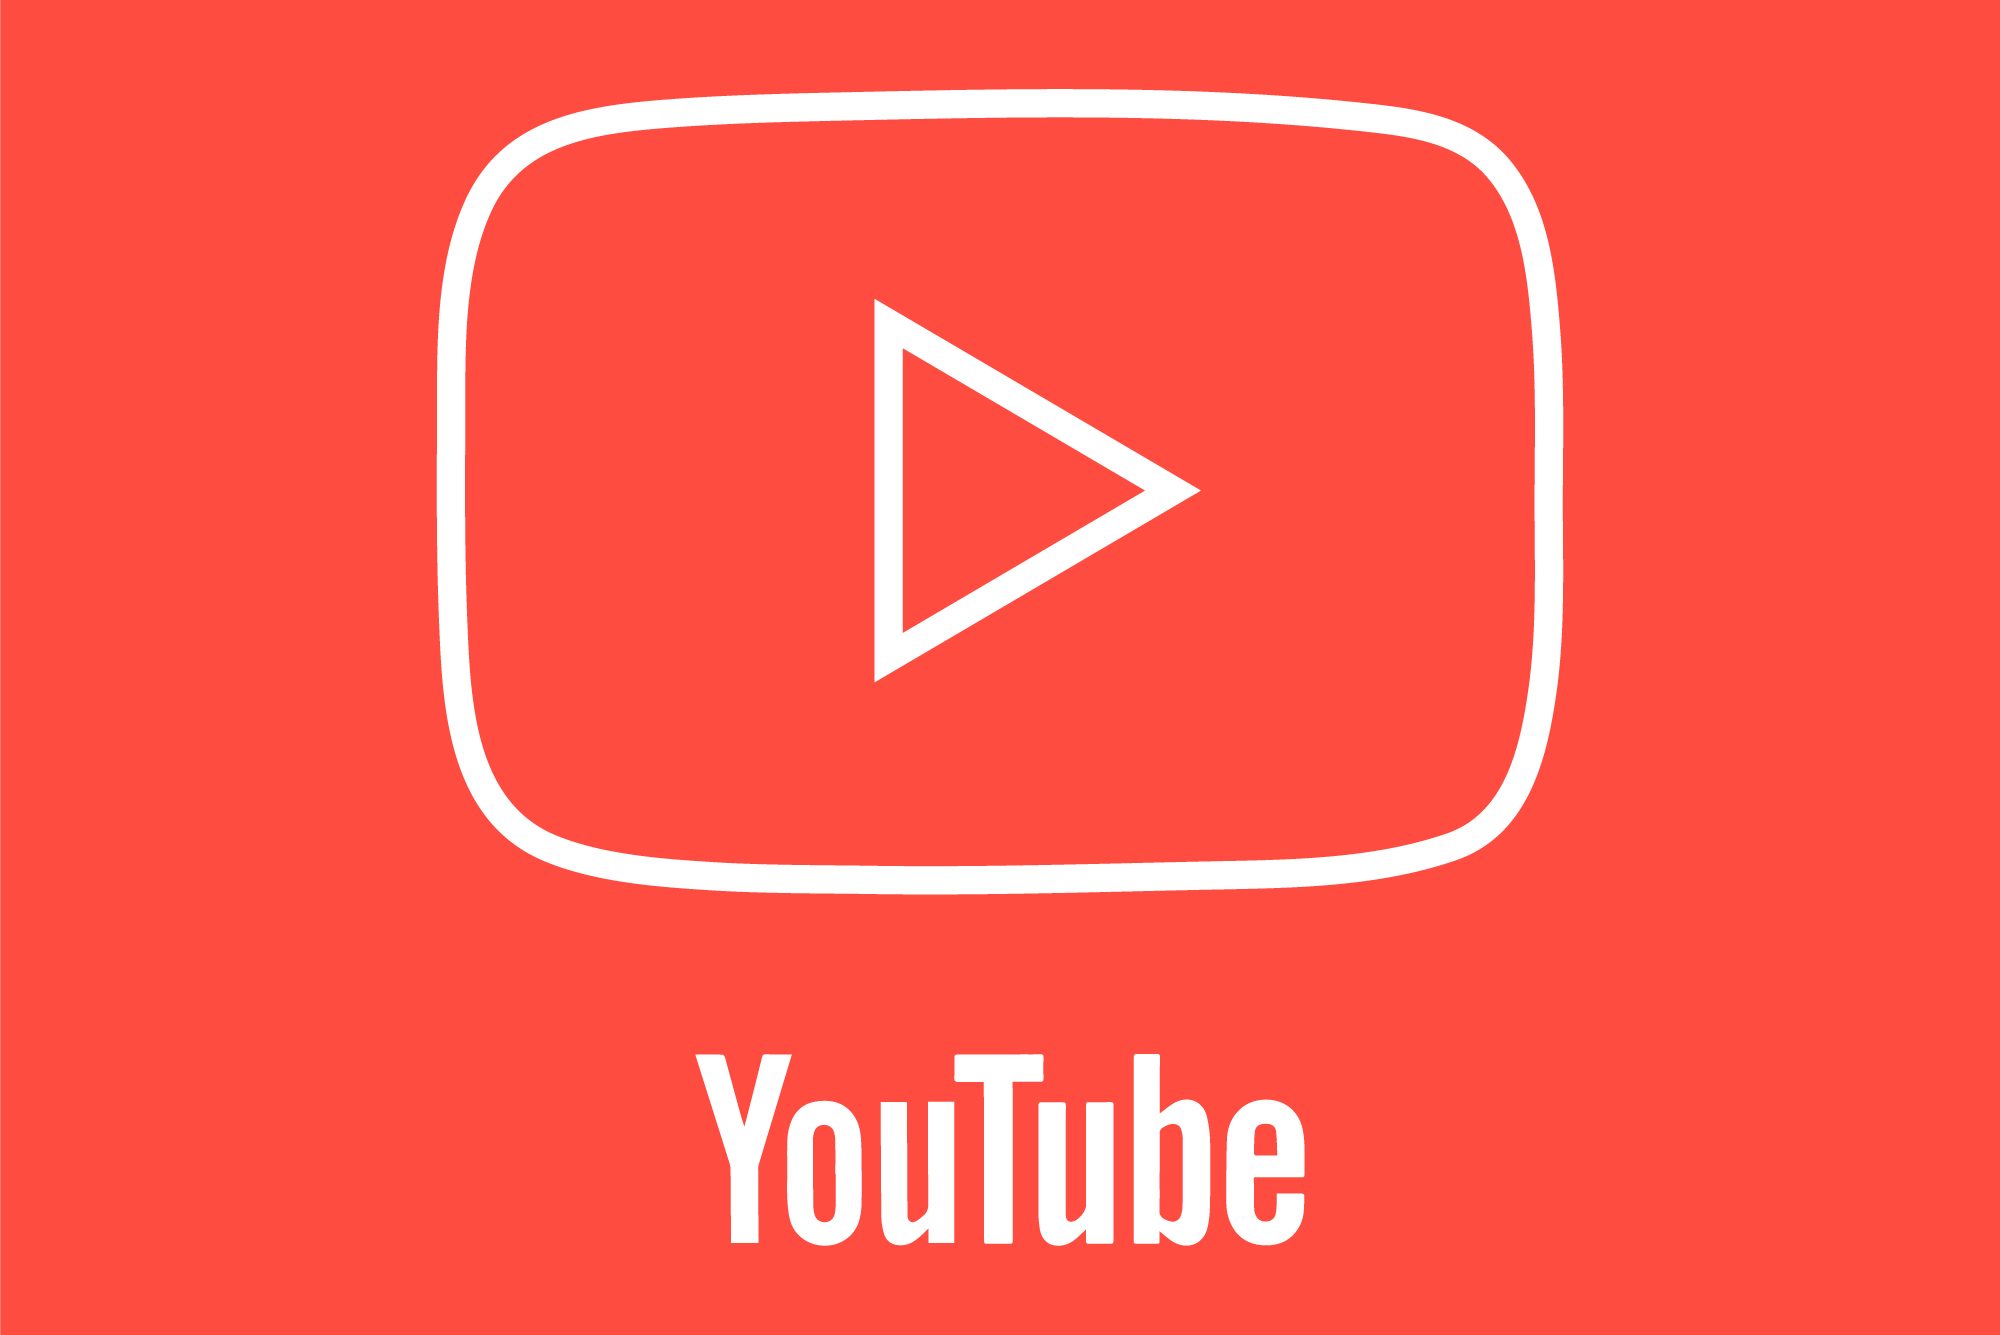 Hati-hati Unduh Video Youtube Ada Malware Pencuri Data!